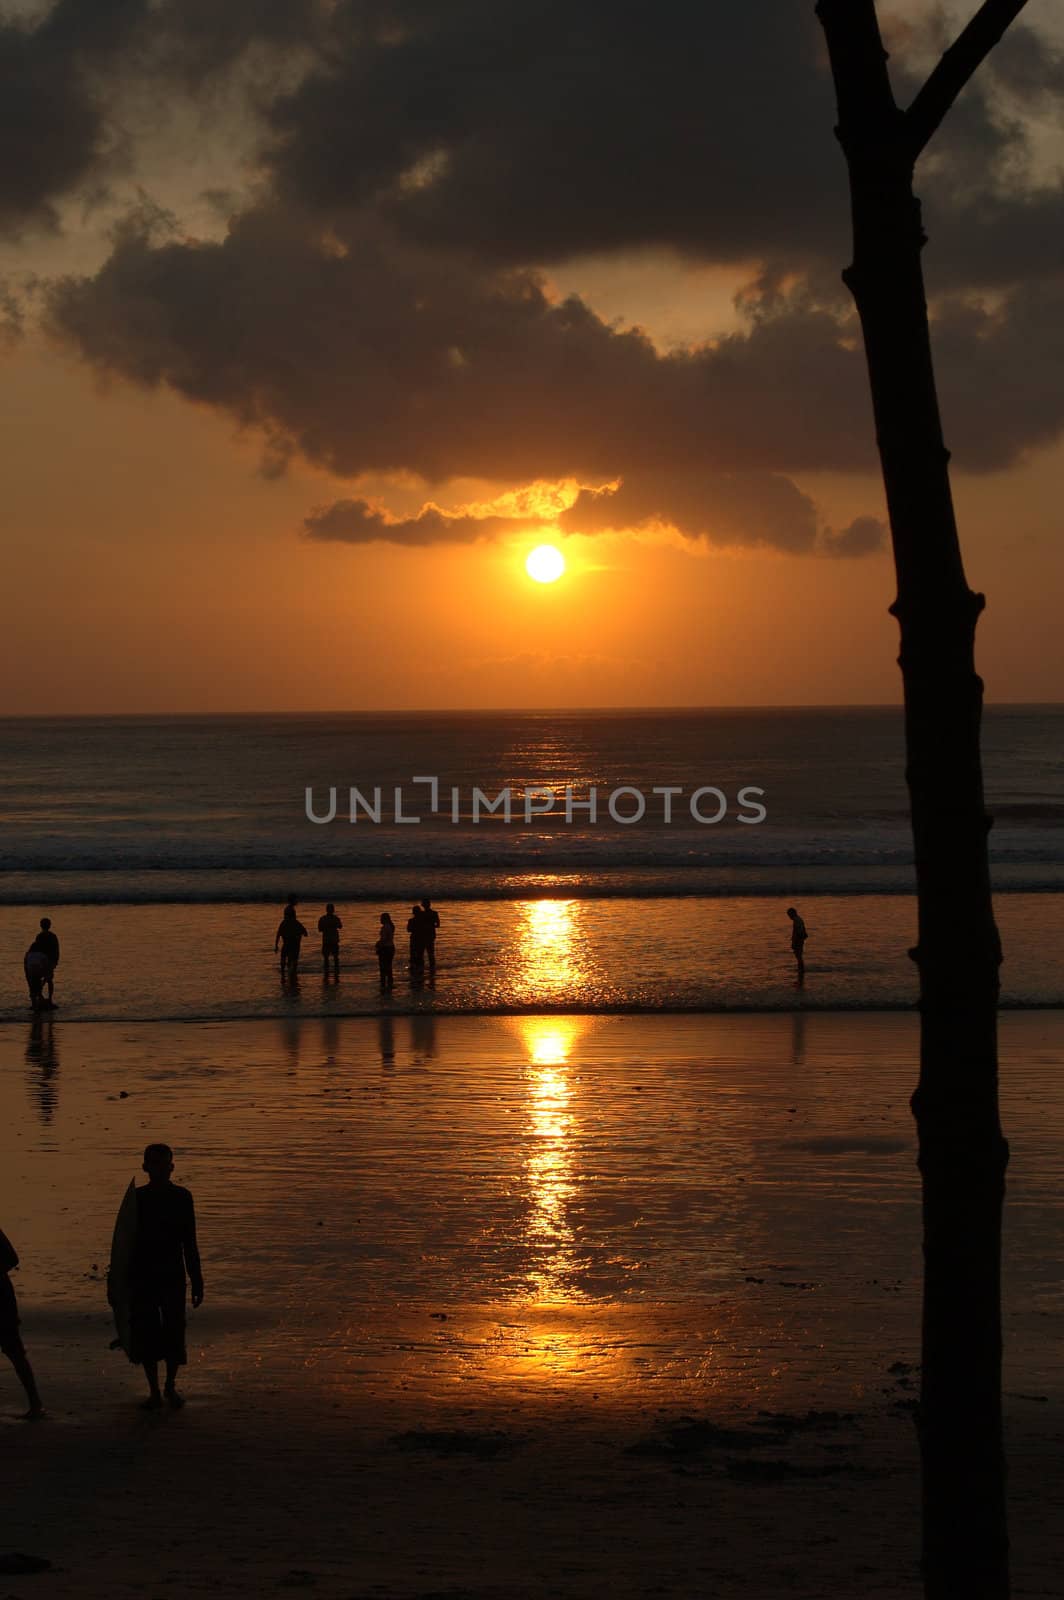 Sunset in Kuta, Bali, Indonesia.